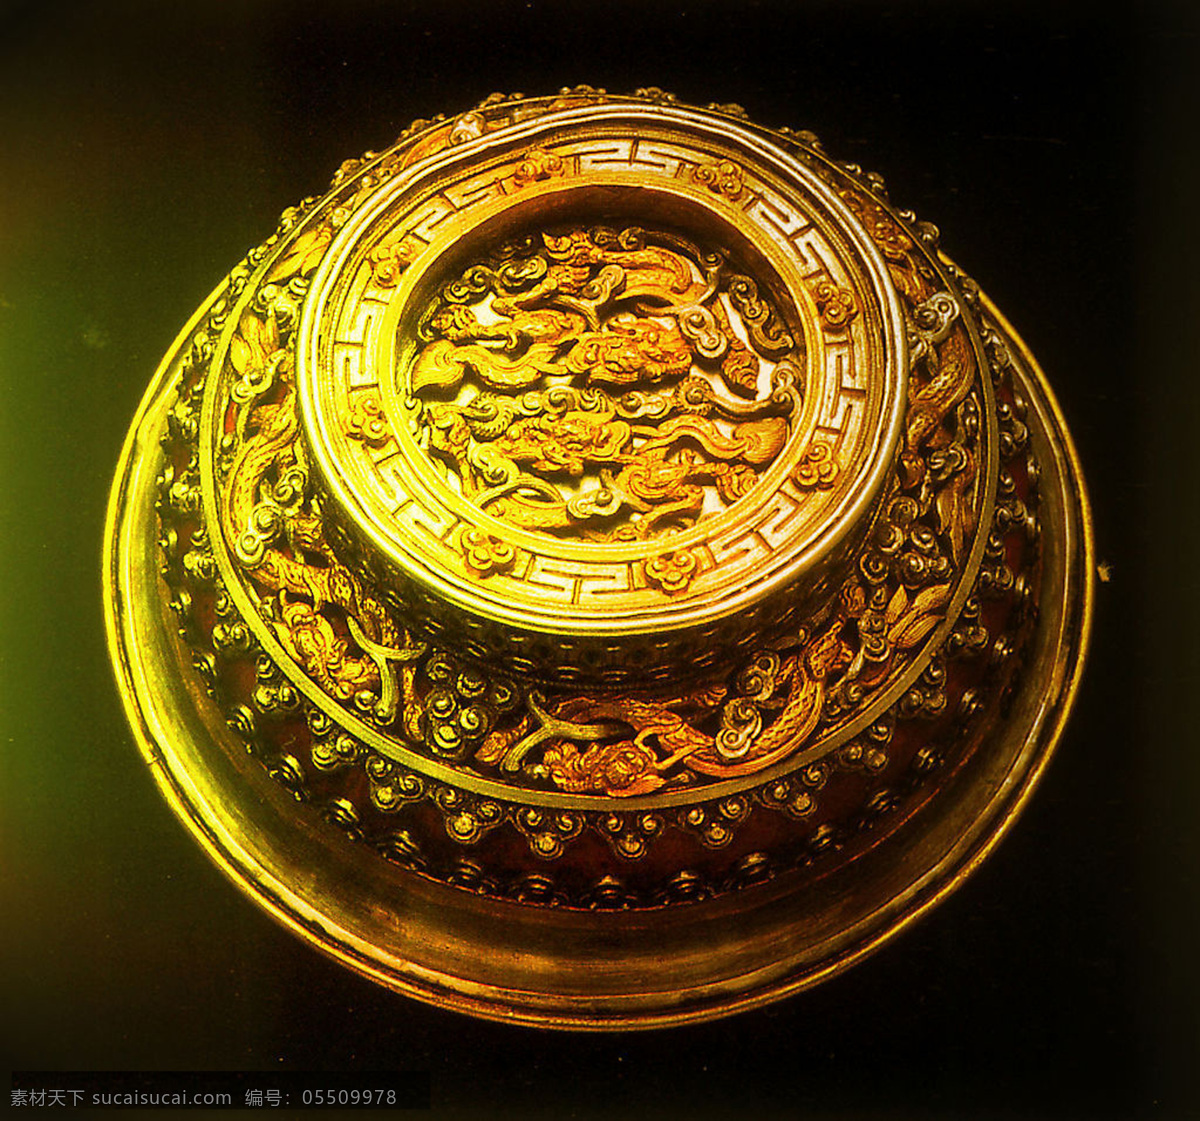 高清 中国 风 金色 龙 纹 樽 传统文化 雕塑 高清素材 古典 龙浮雕 设计素材 中国风 金碗